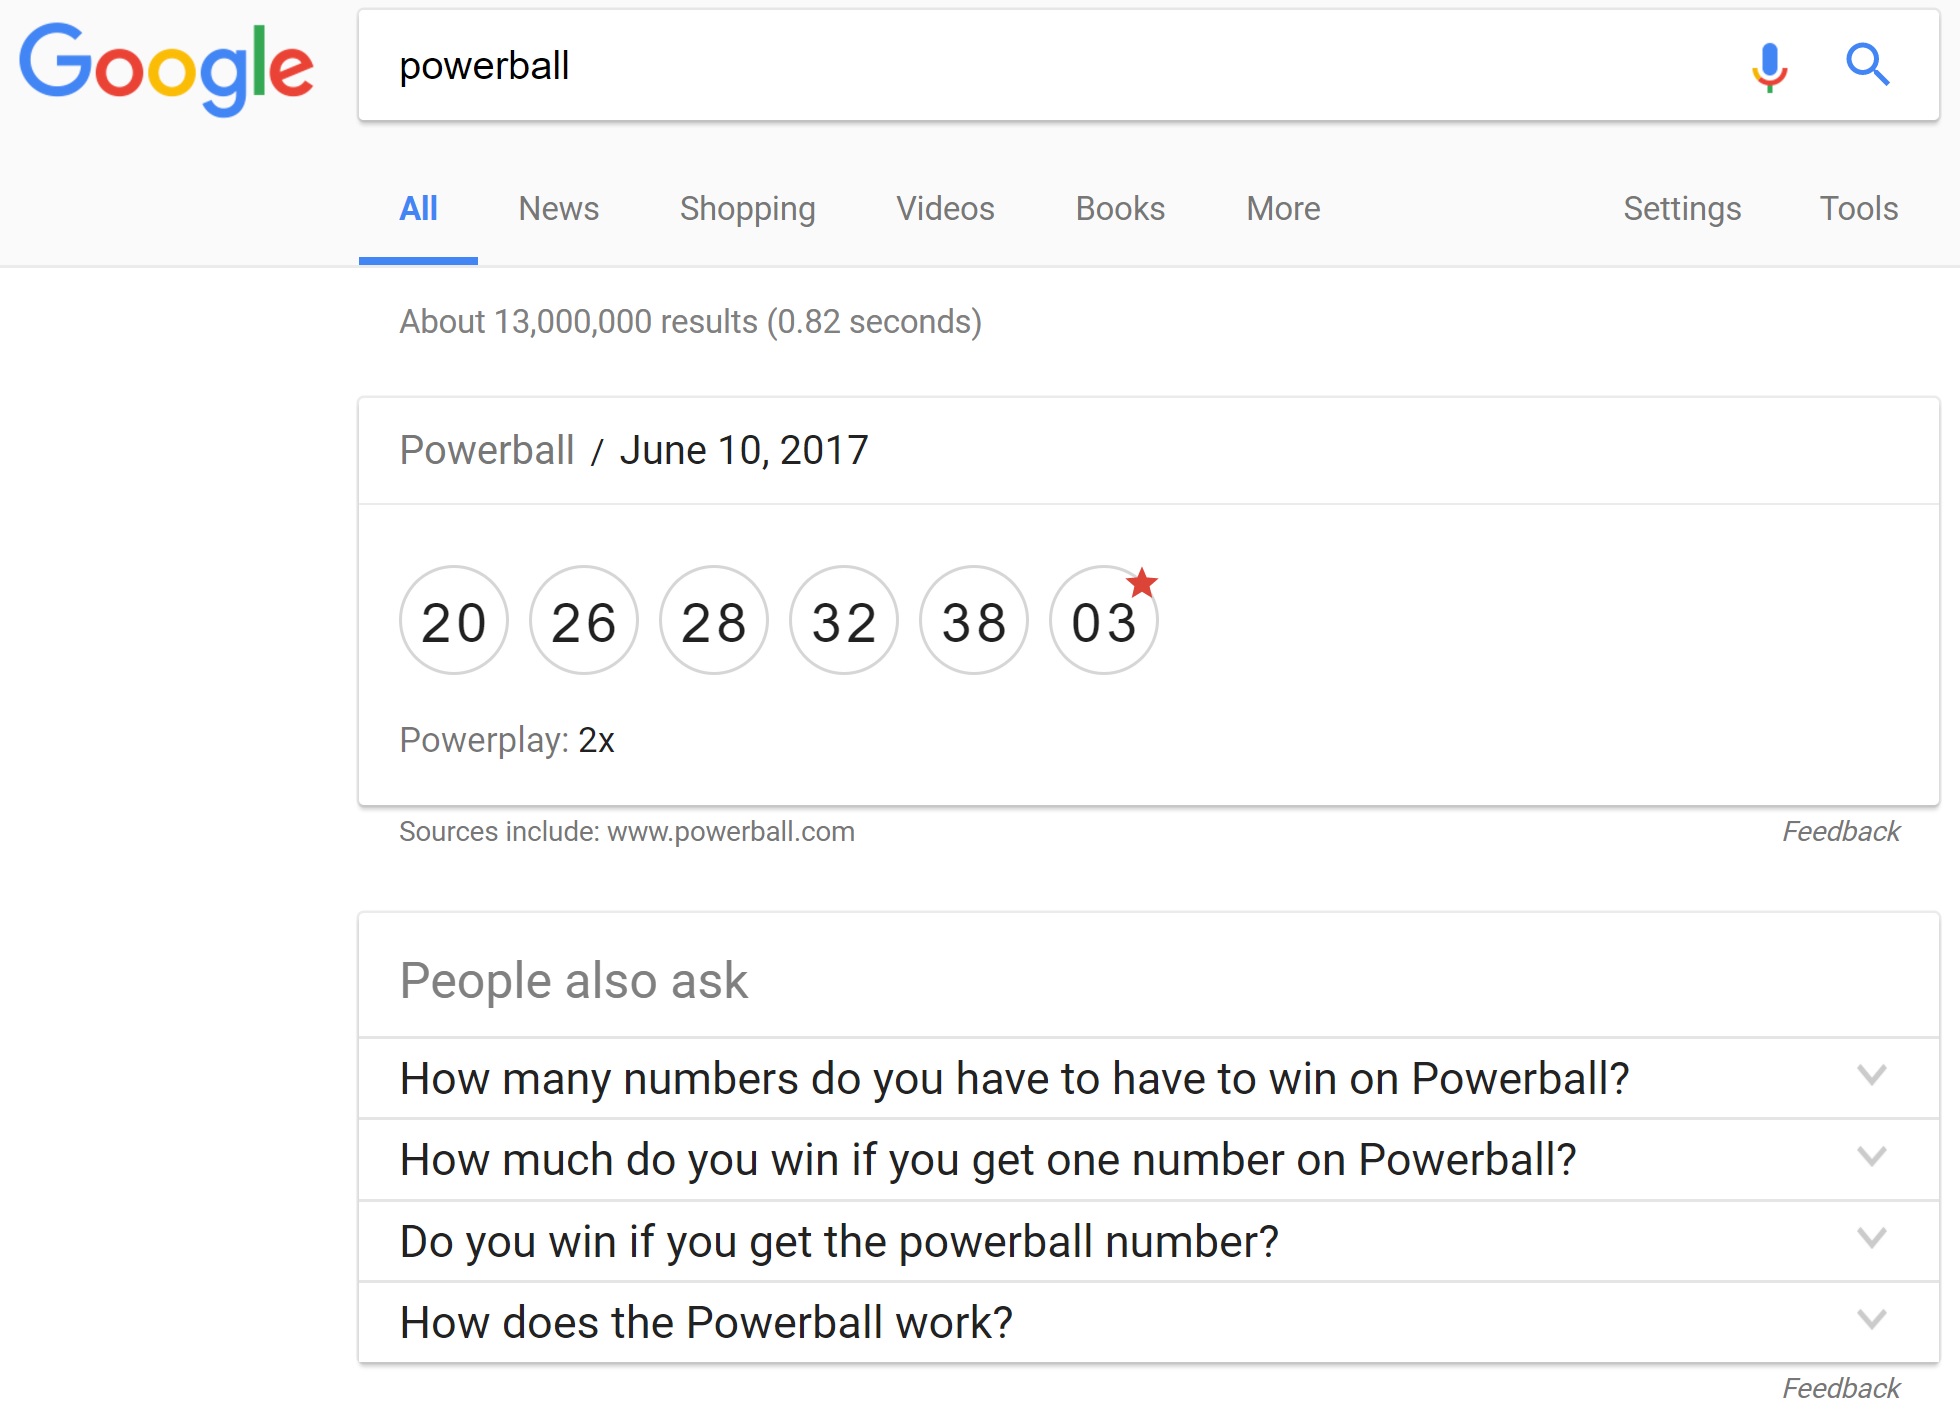 le résultat Powerball affiche un mauvais résultat dans les Featured Snippet de Google